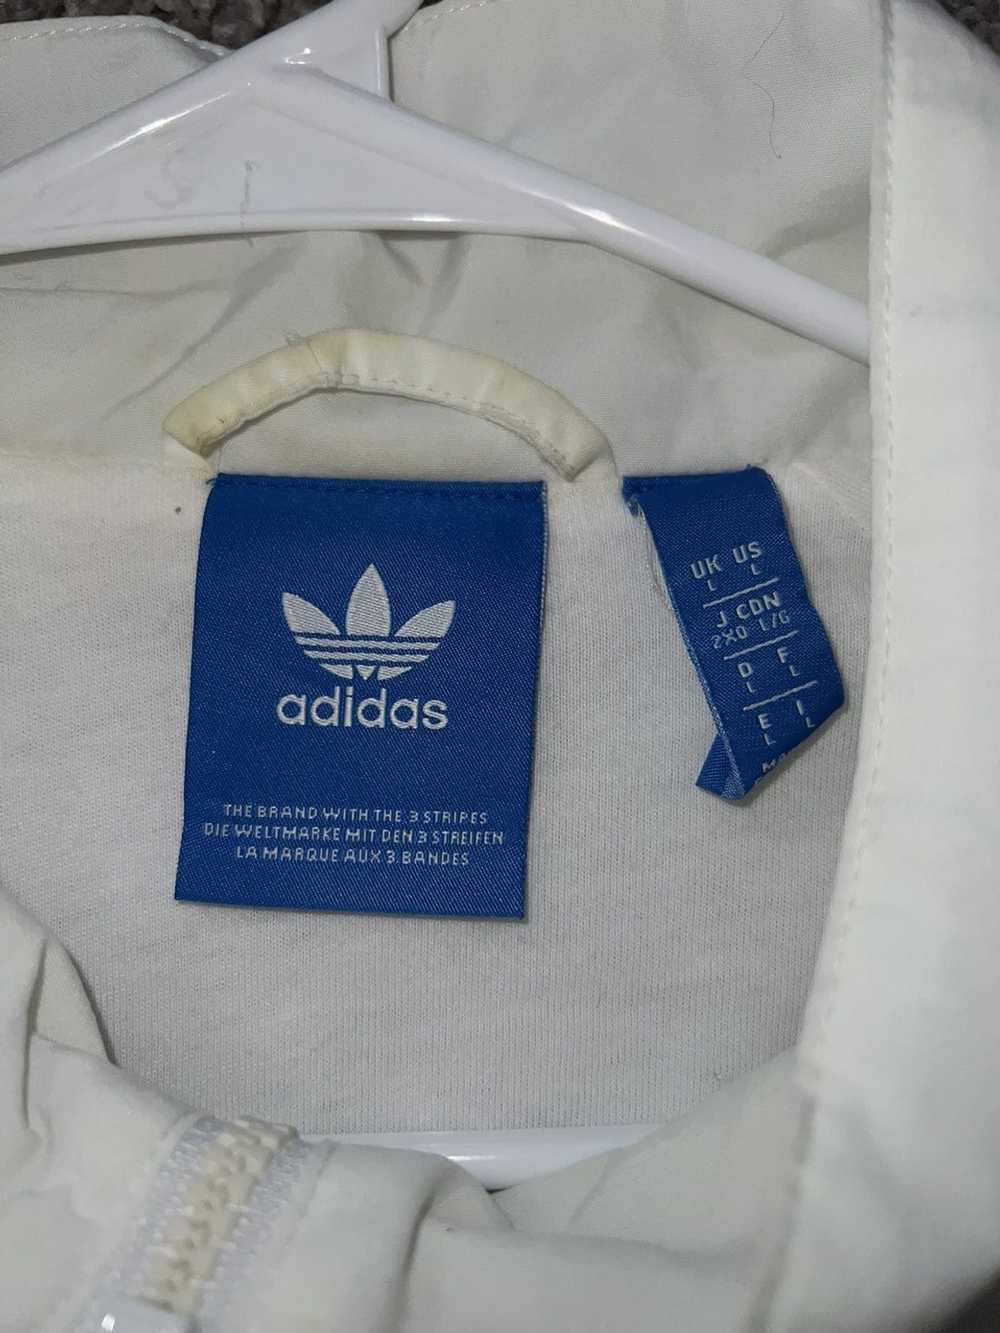 Adidas ADIDAS TRACK JACKET - image 3